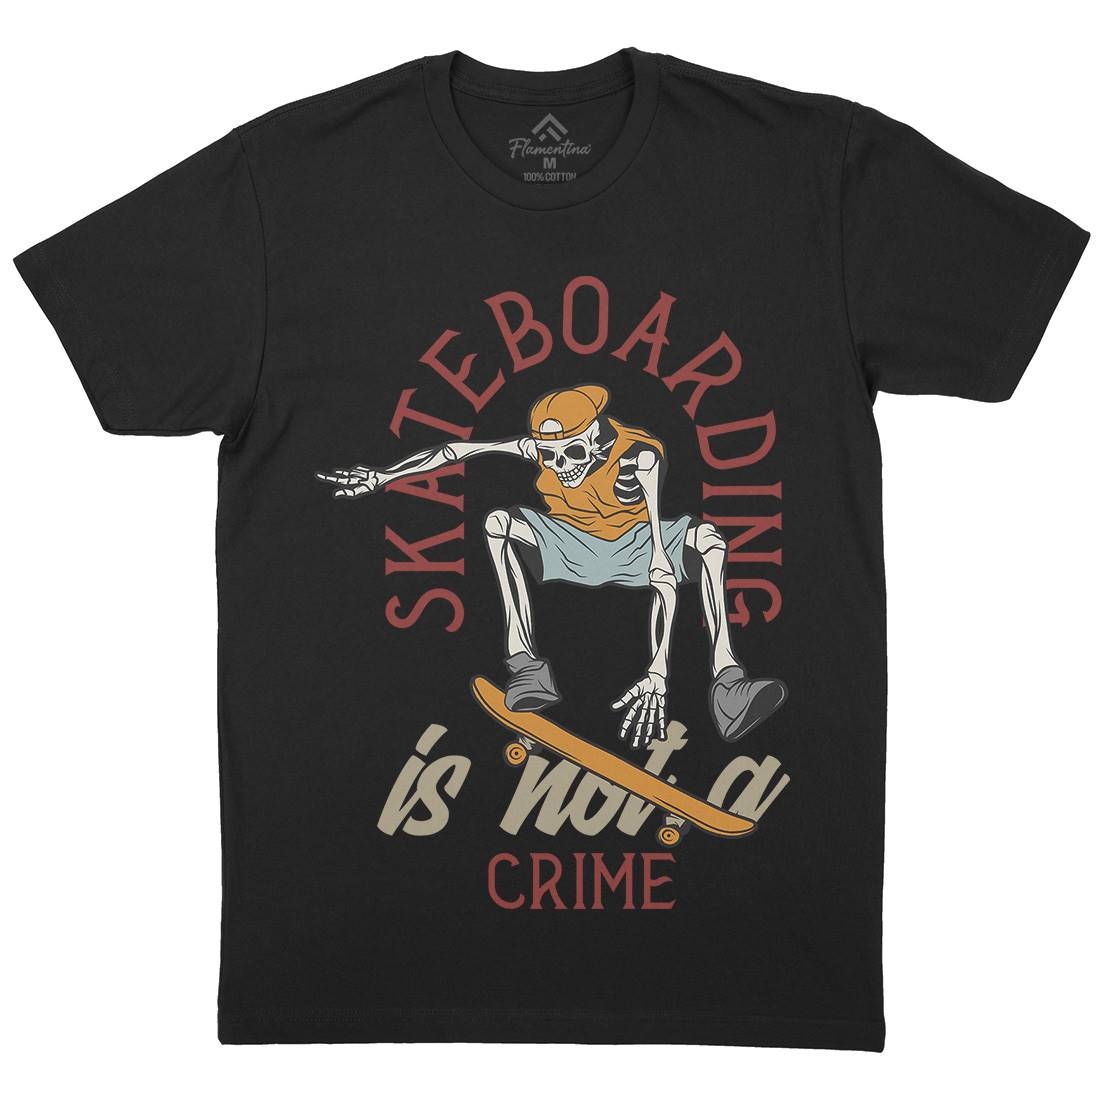 Skateboarding Crime Mens Crew Neck T-Shirt Skate D975